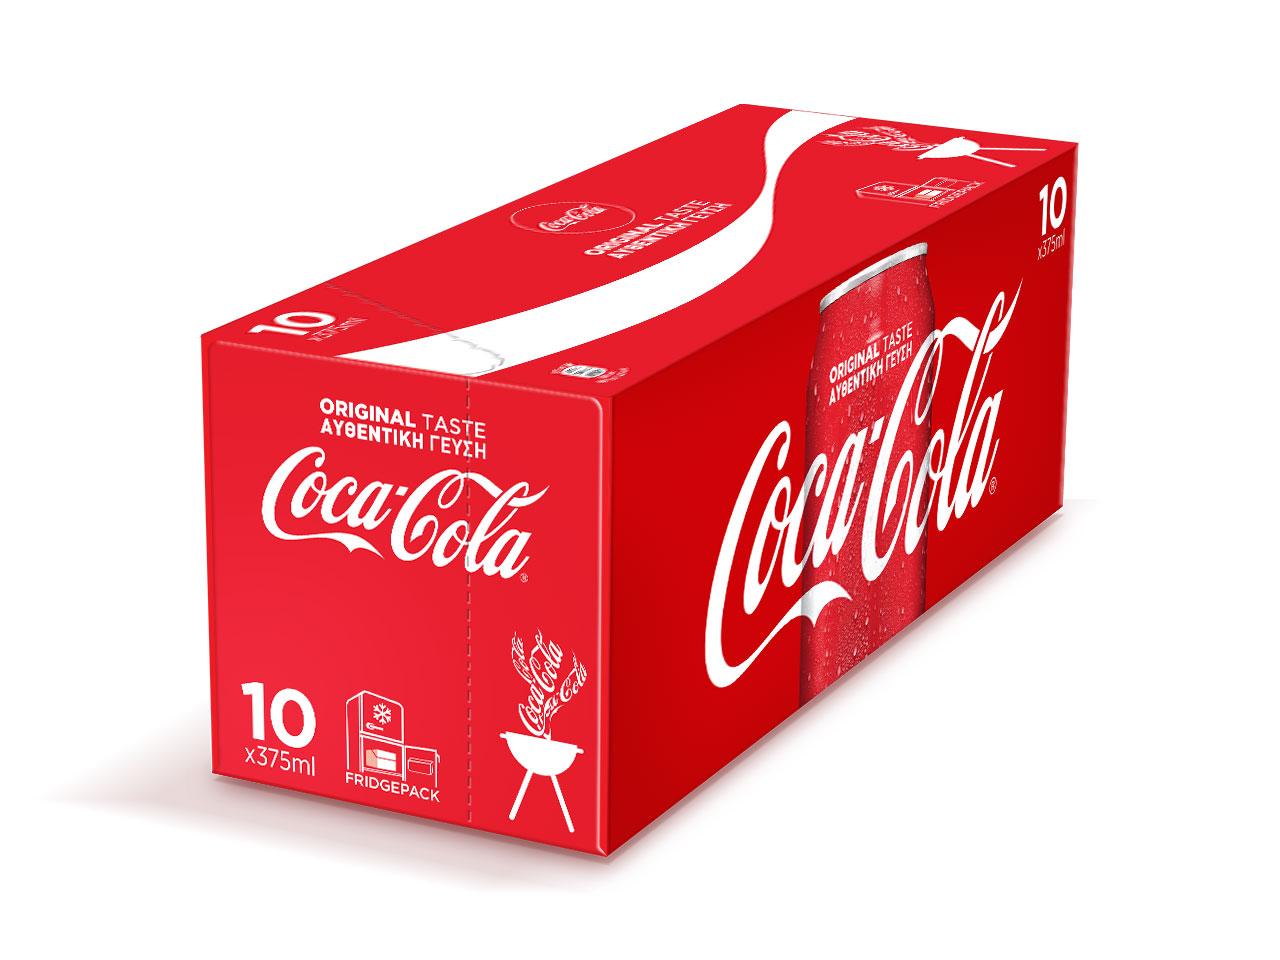 Featured image of the Coca-Cola Original fridgepack.